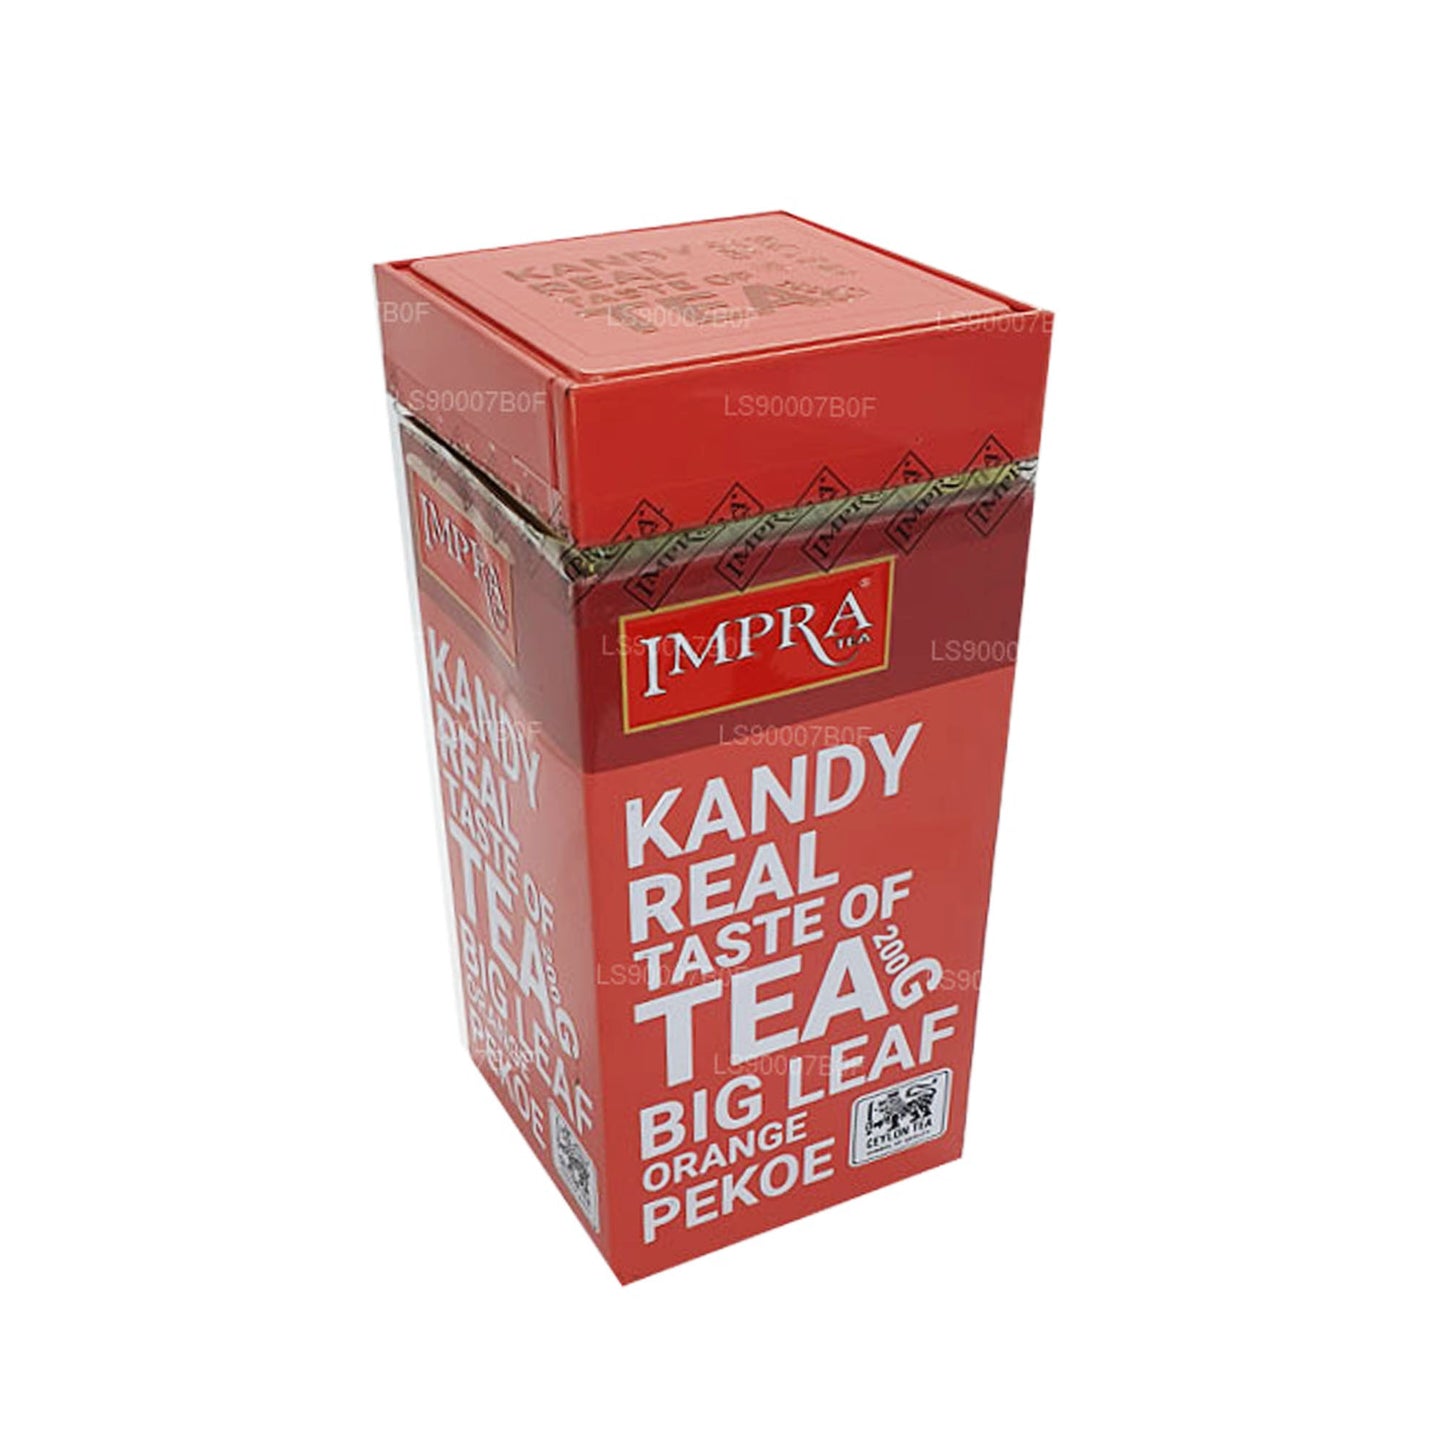 Impra Kandy Taste of Tea Suur Leaf oranž Pekoe (200g) Meatal Caddy